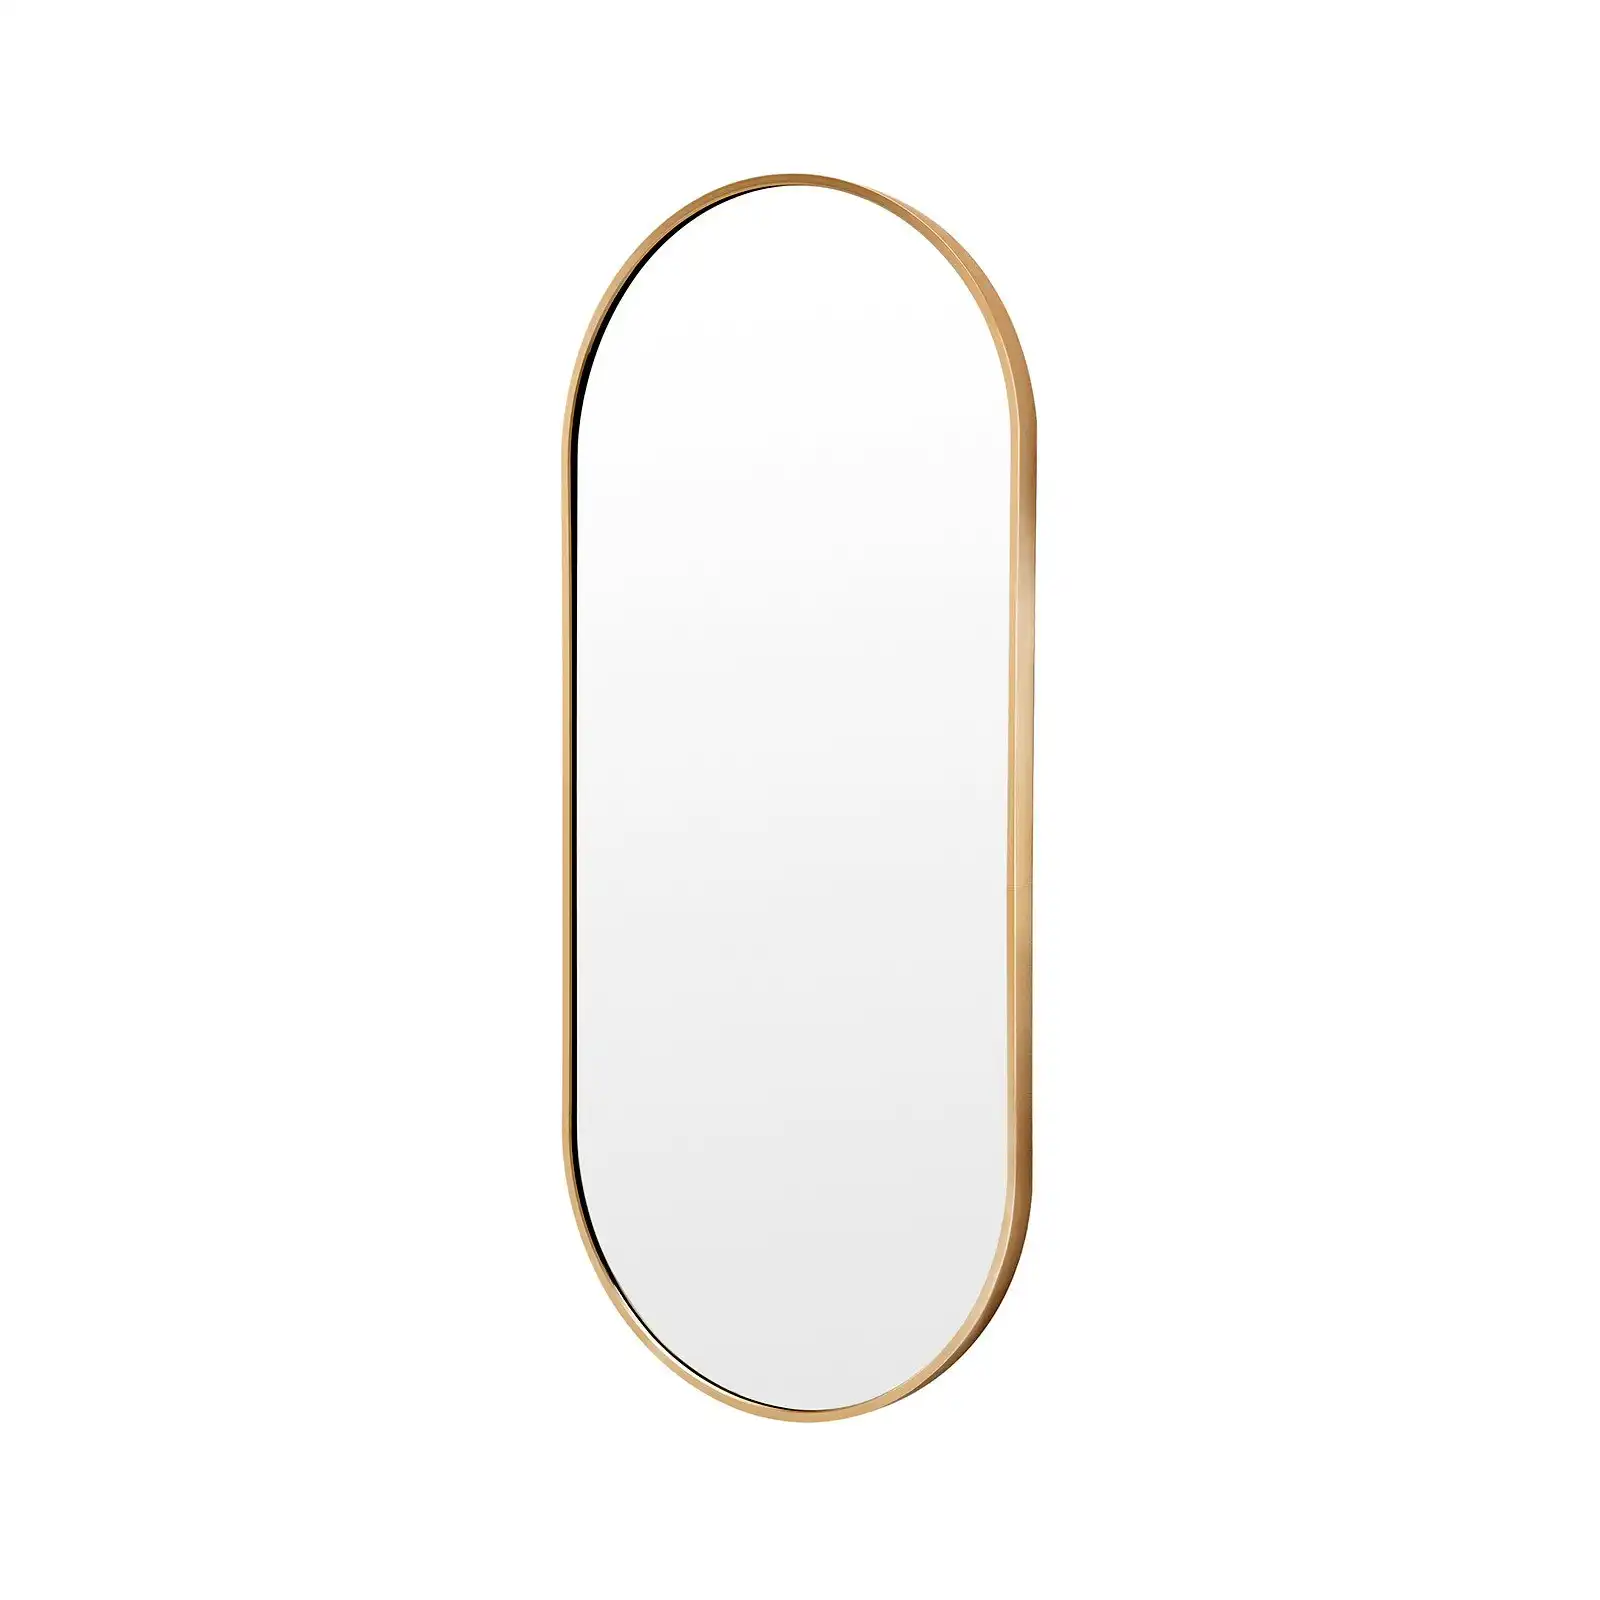 45 x 100cm Wall Mirror Oval Bathroom - GOLD